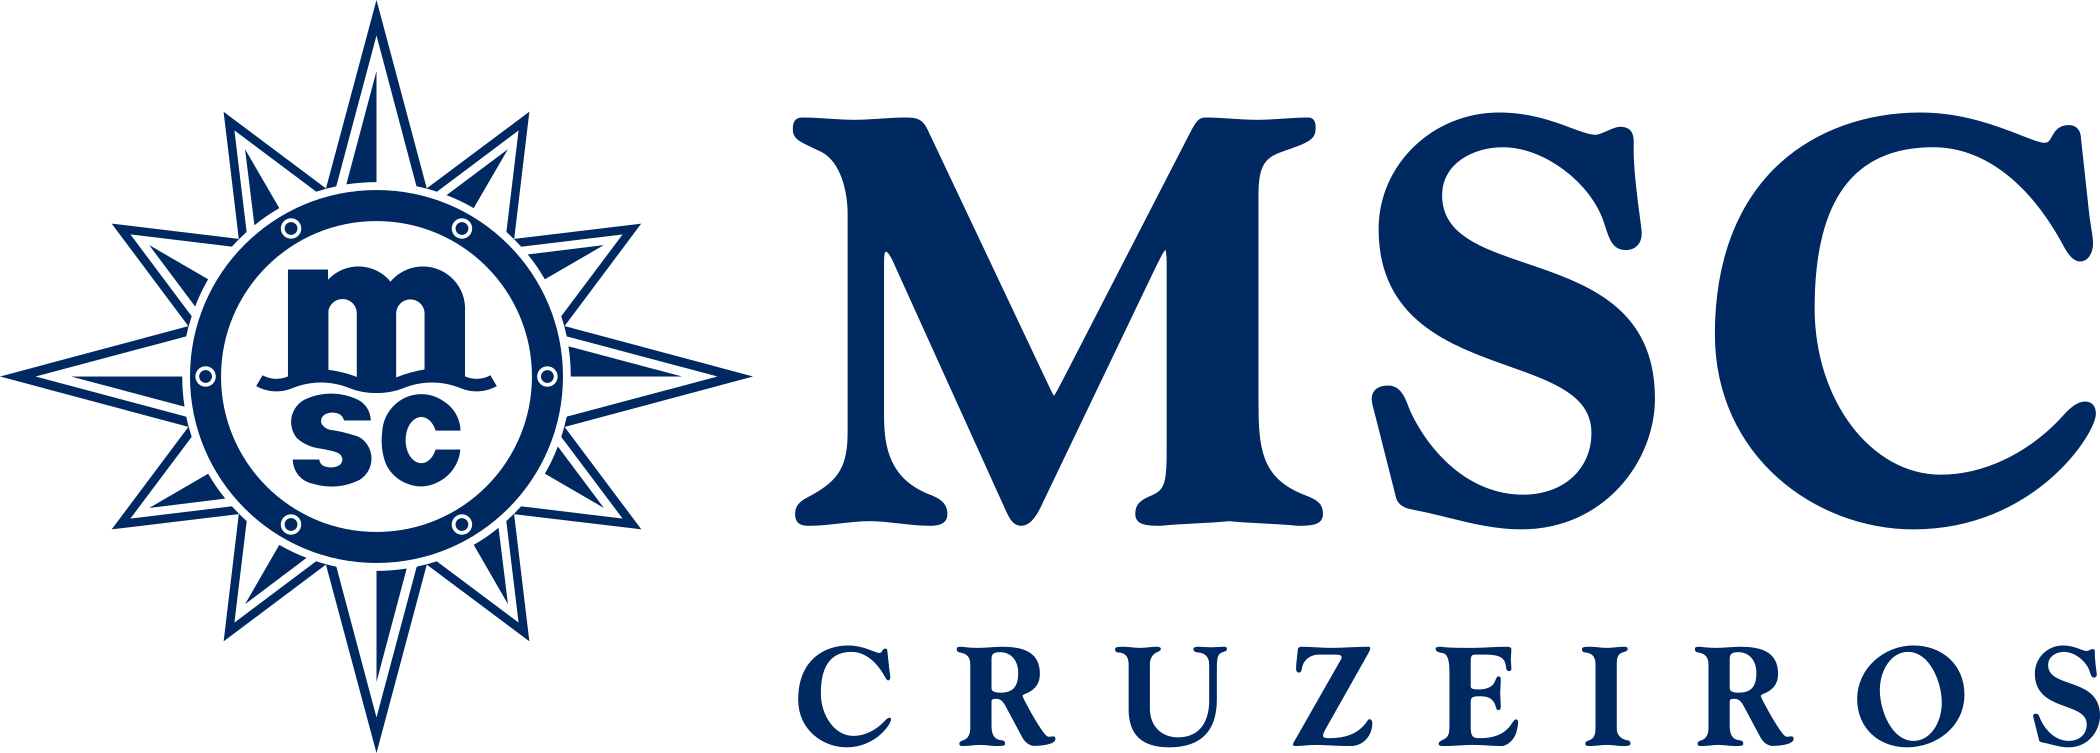 MSC Cruzeiros Logo.